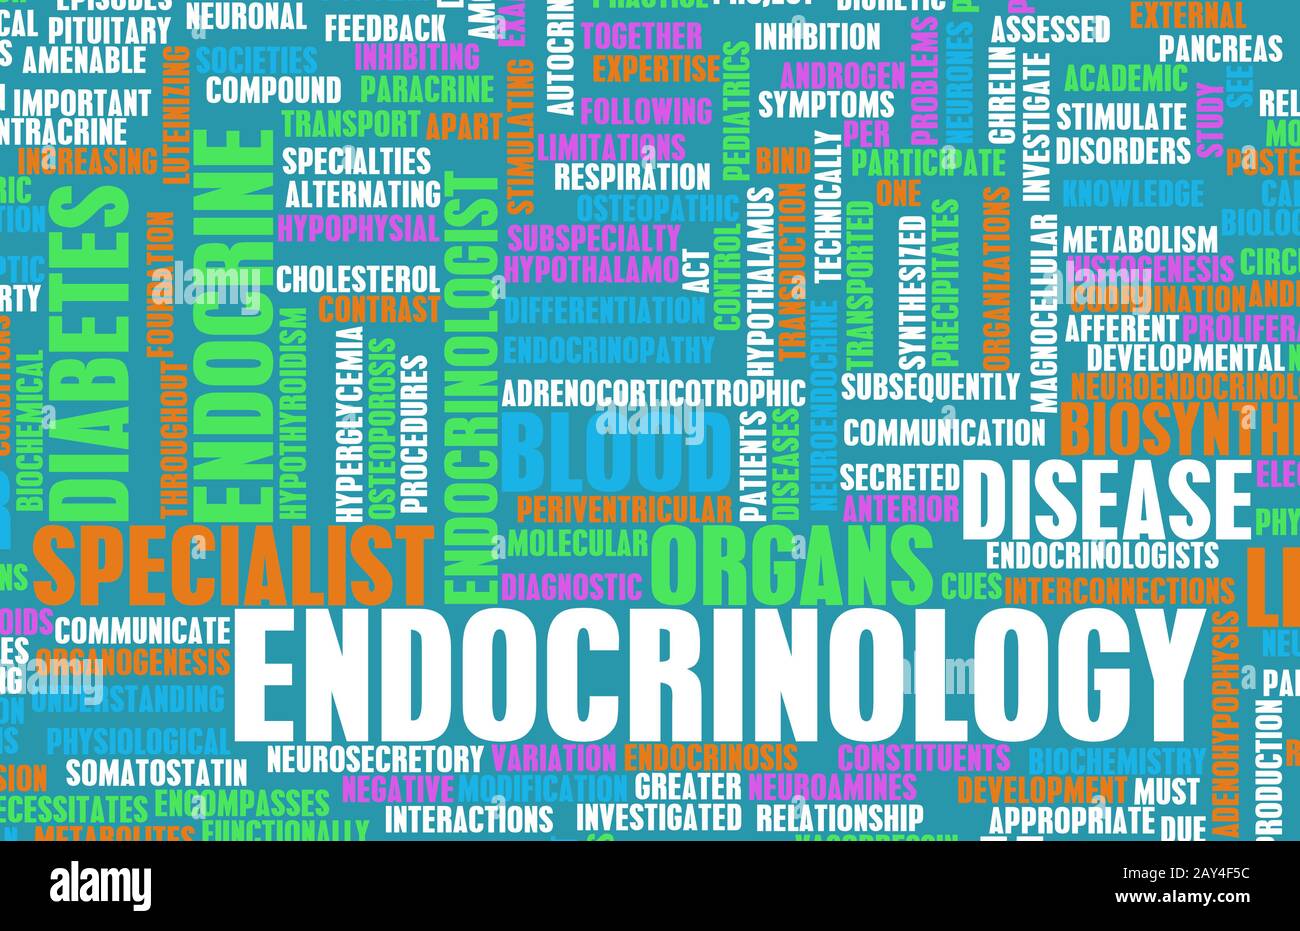 Endocrinology Stock Photo